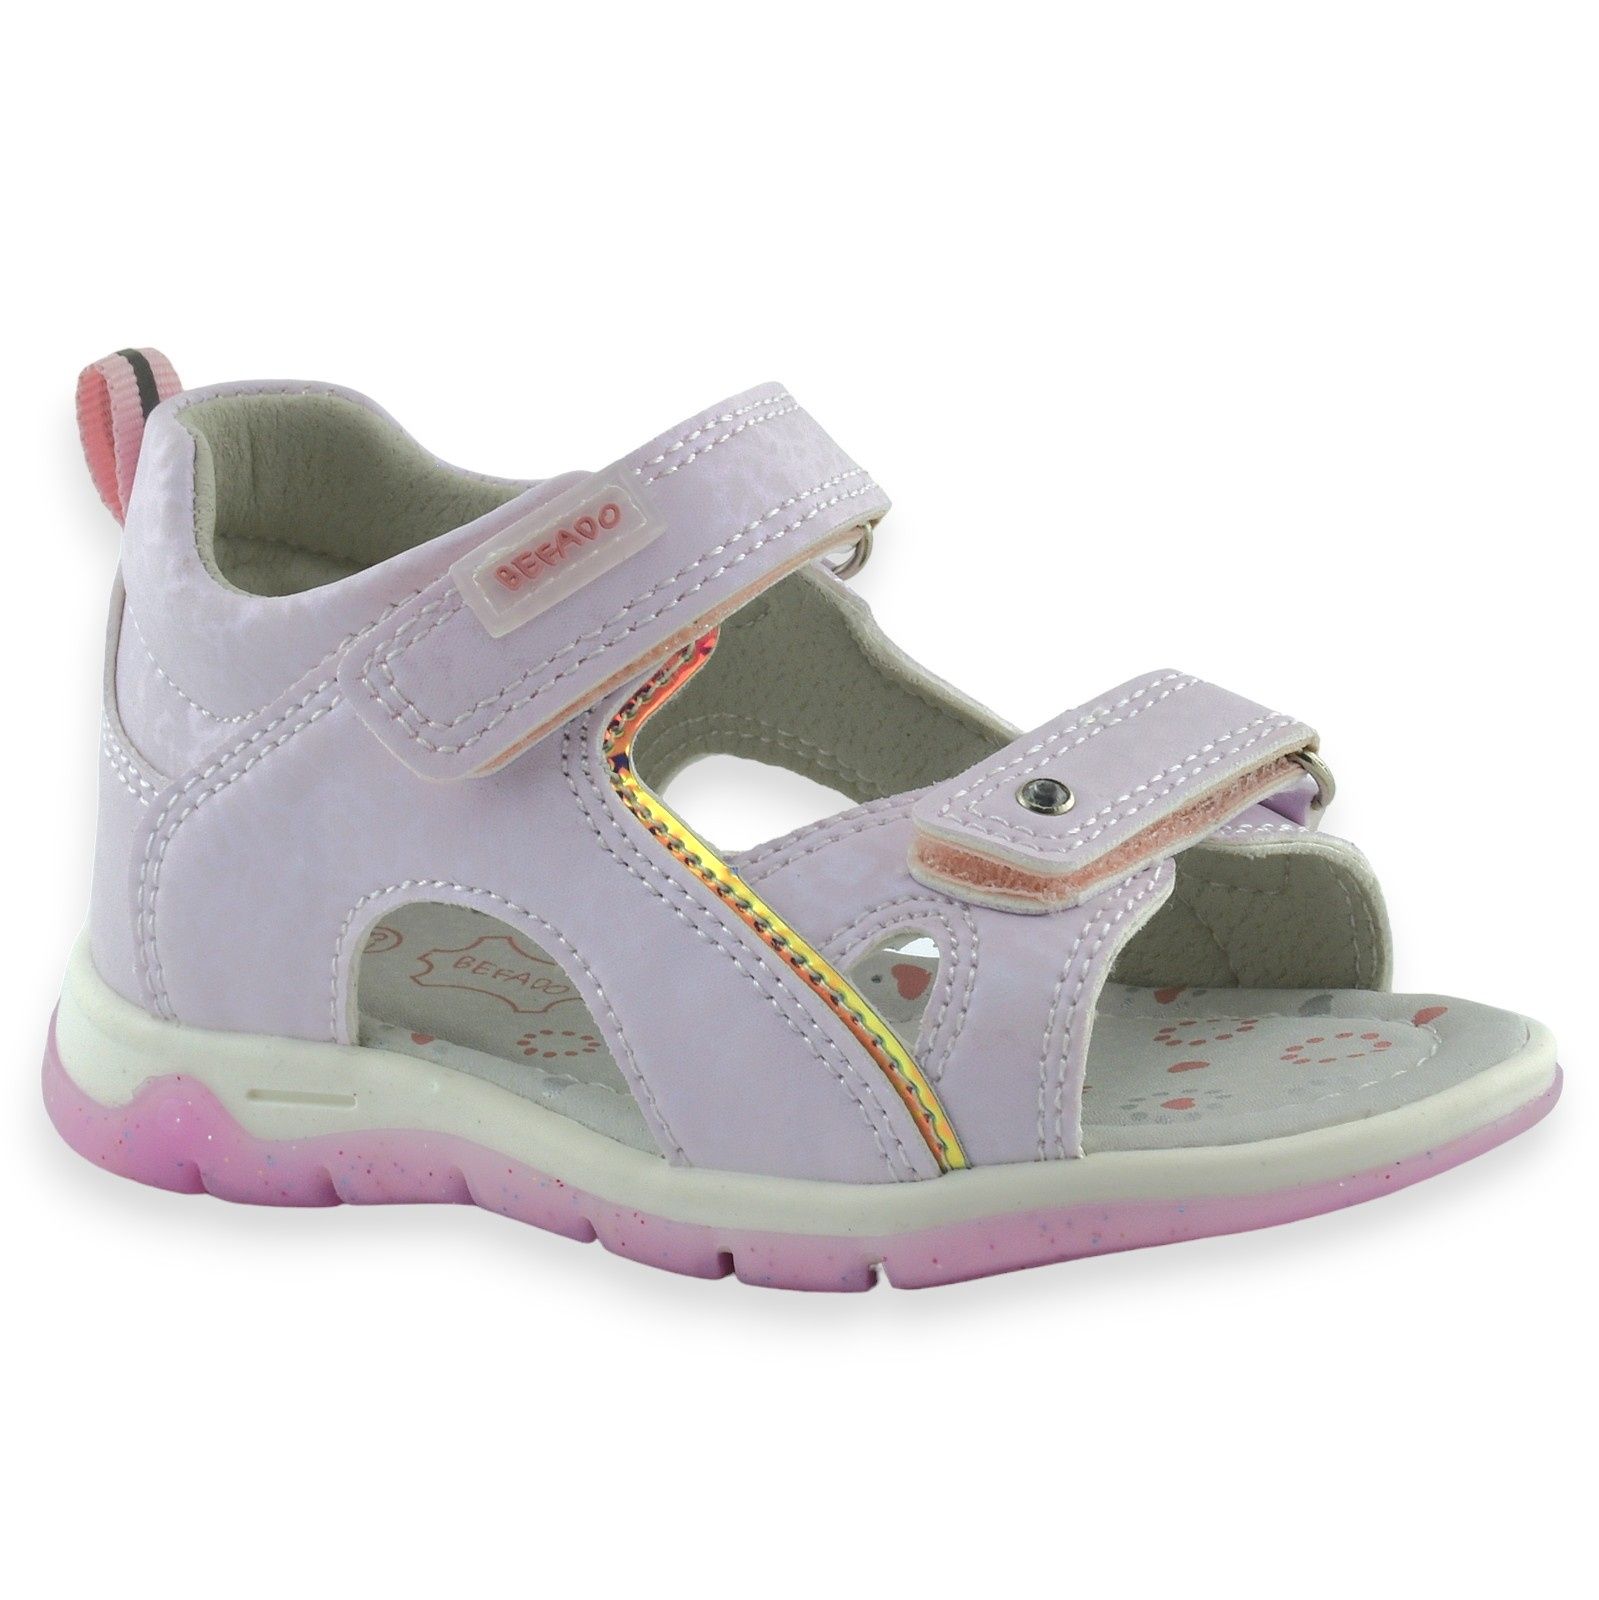 Sandałki dziecięce Befado 170P091 różowe dla dziewczynki rzep |r.20-26